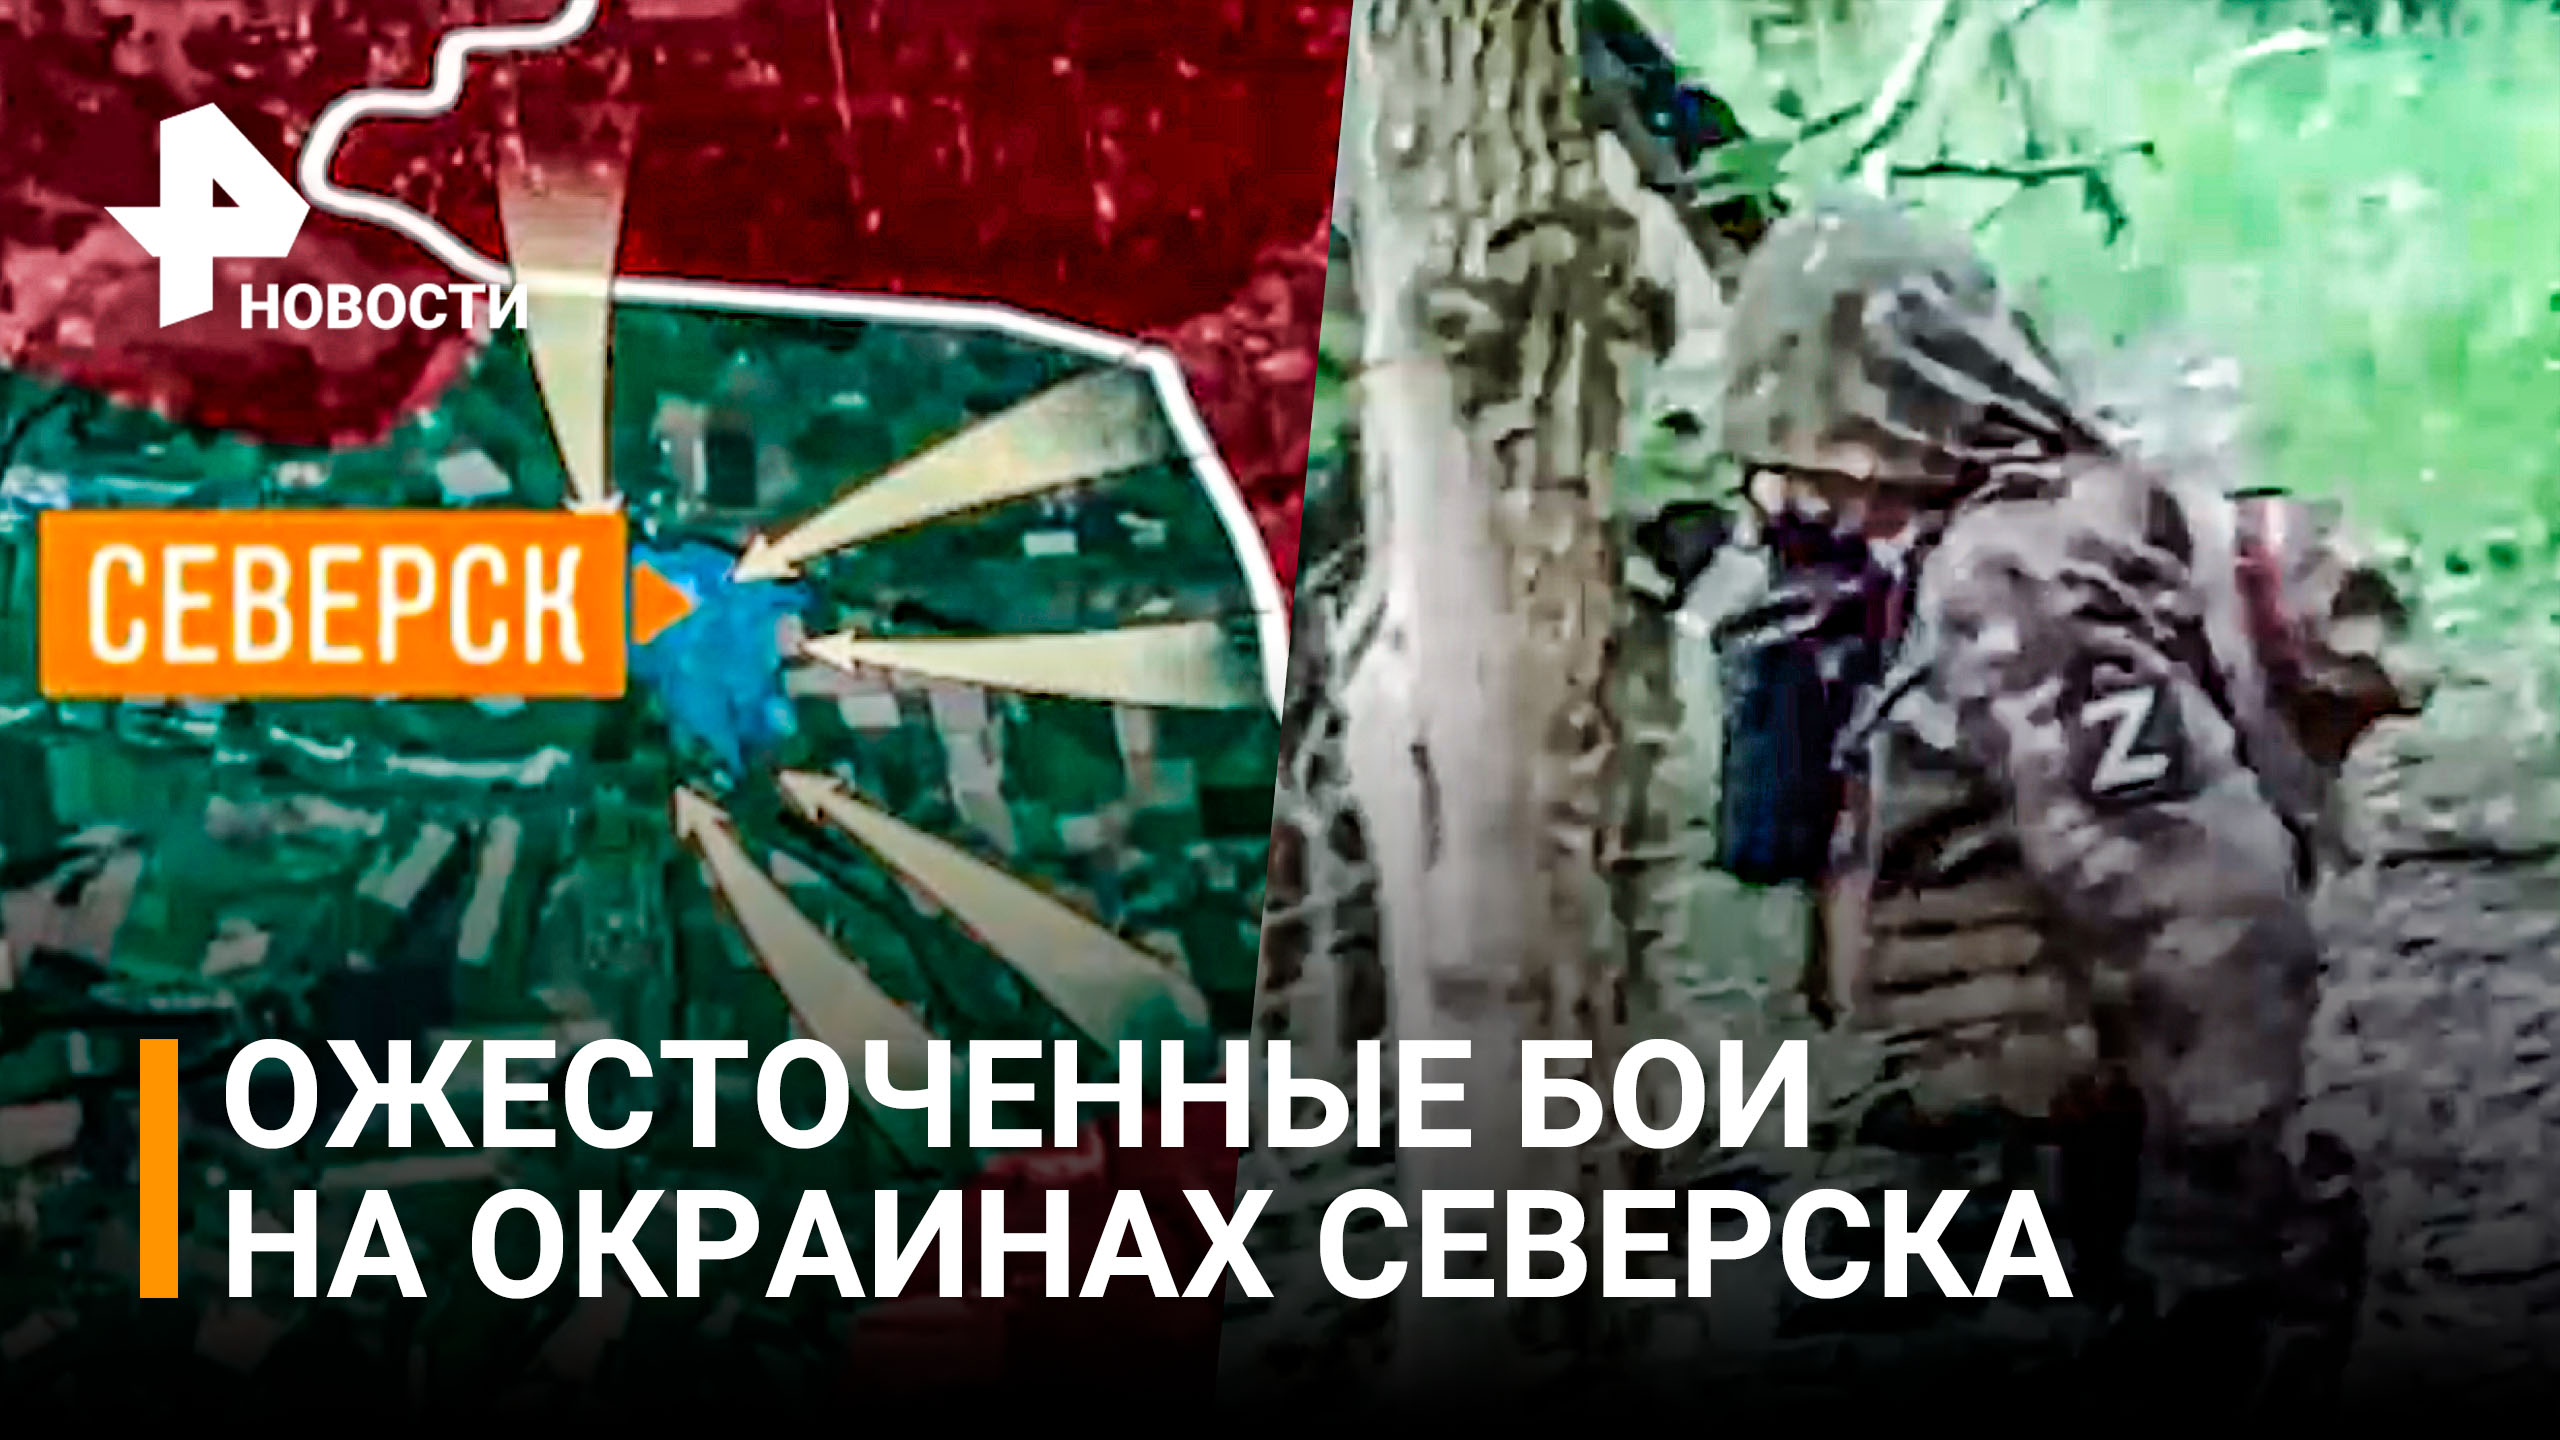 Бойцы ЛНР накрыли группу ВСУ в Северске. Бои на окраинах города / РЕН Новости